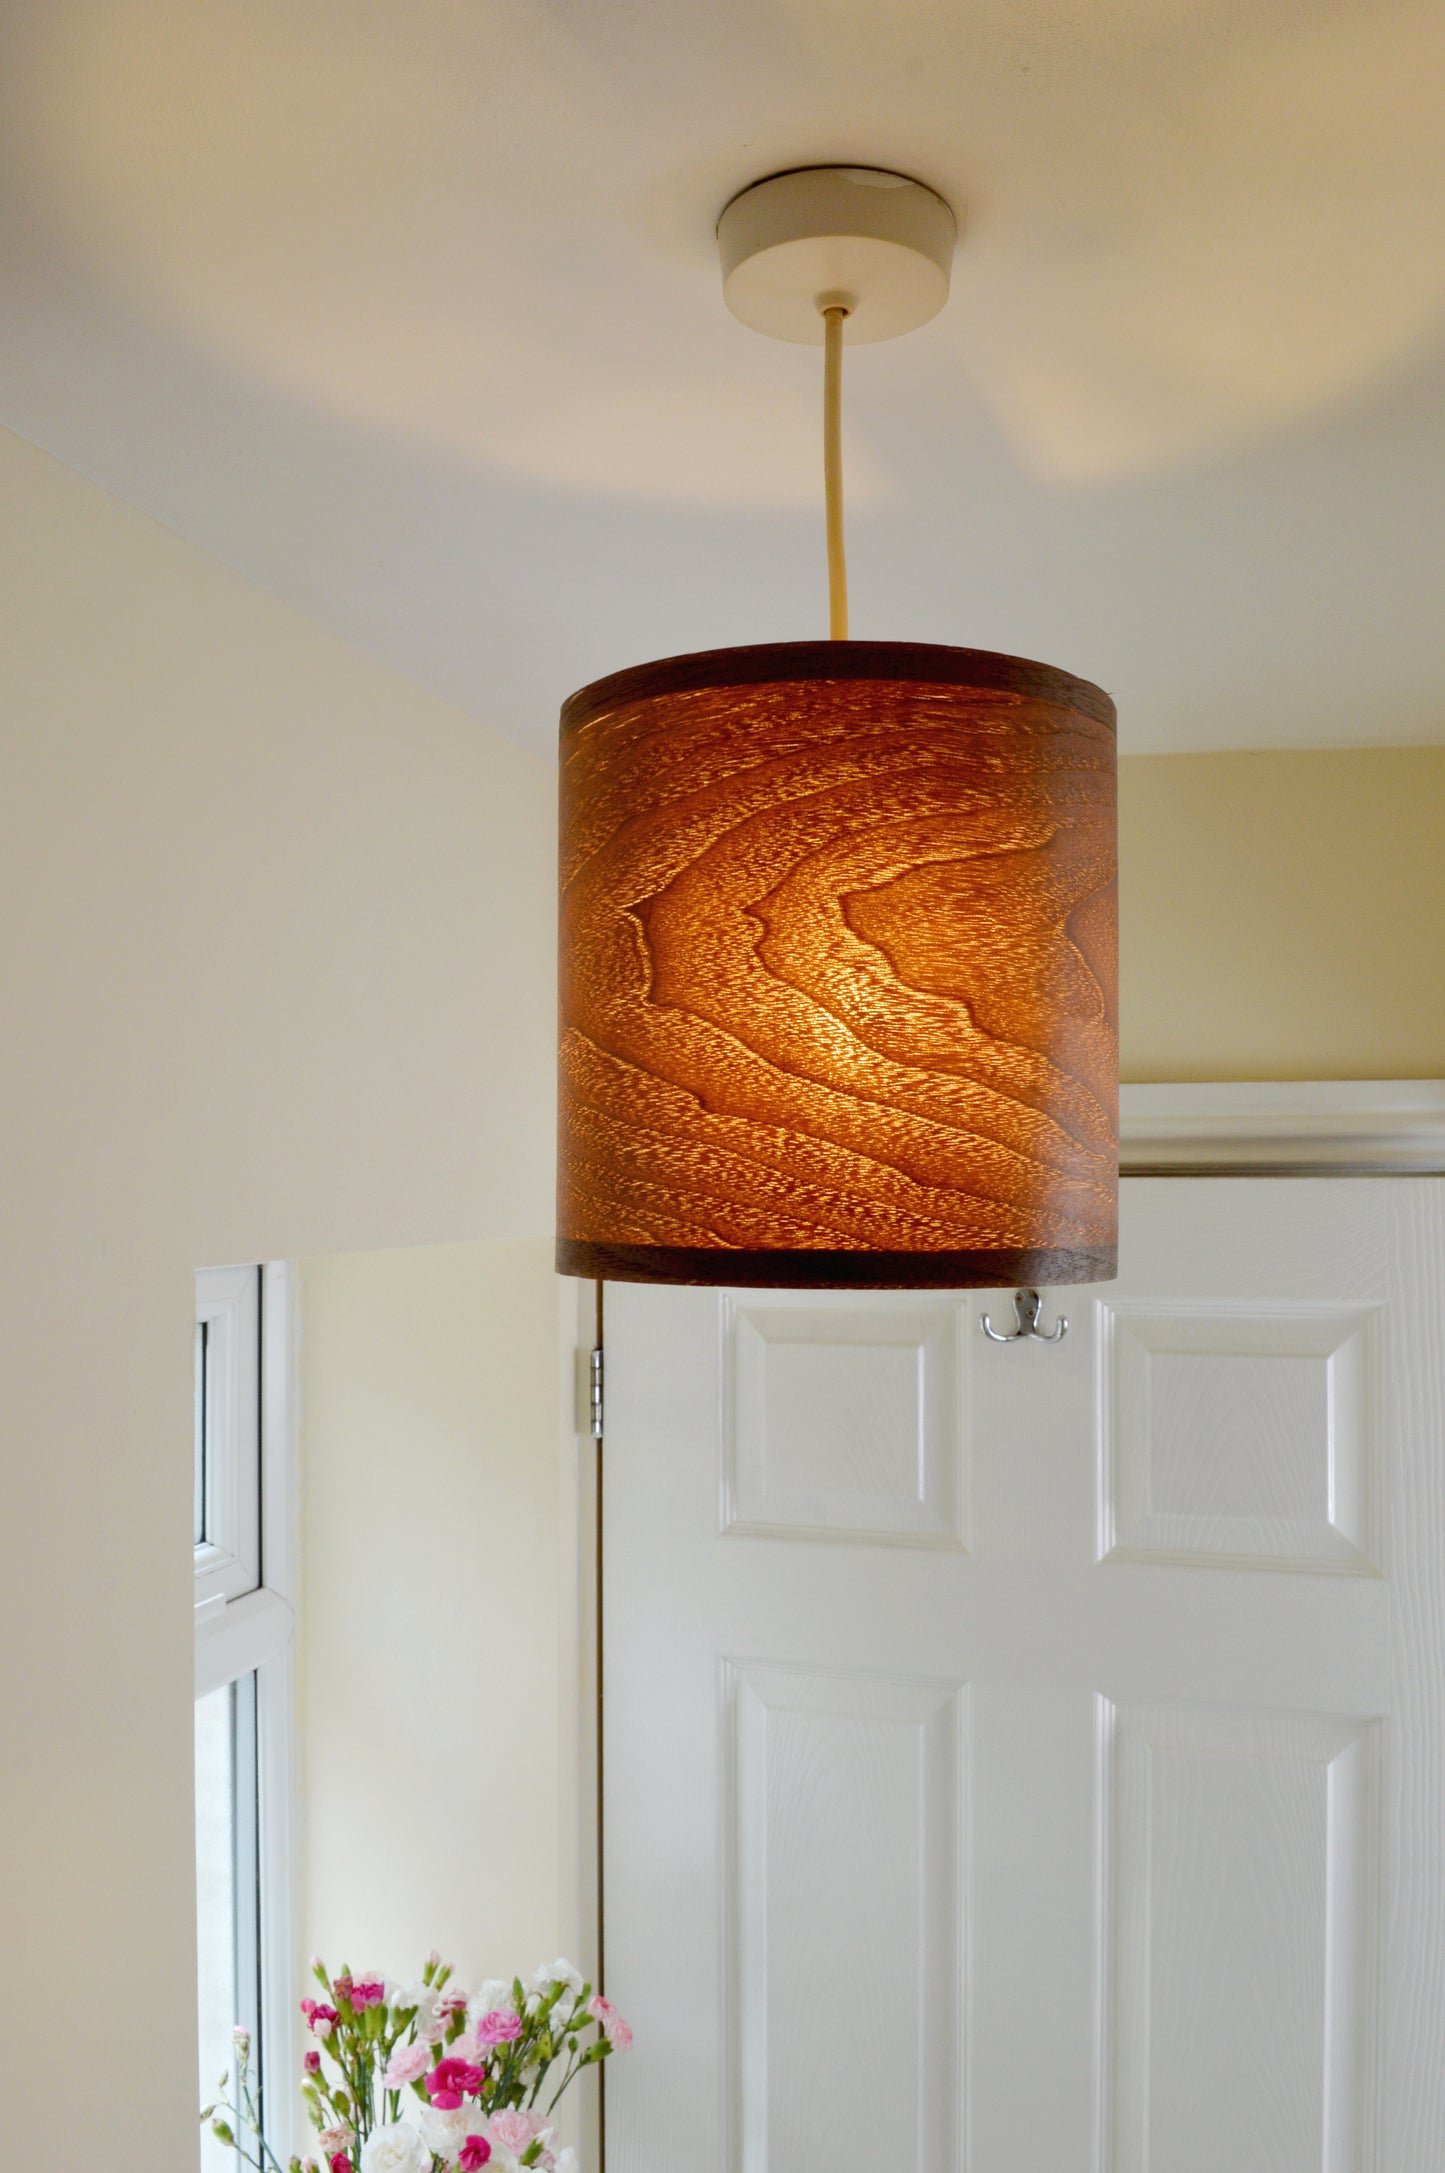 20cm Dark Walnut veneer ceiling pendant light shade